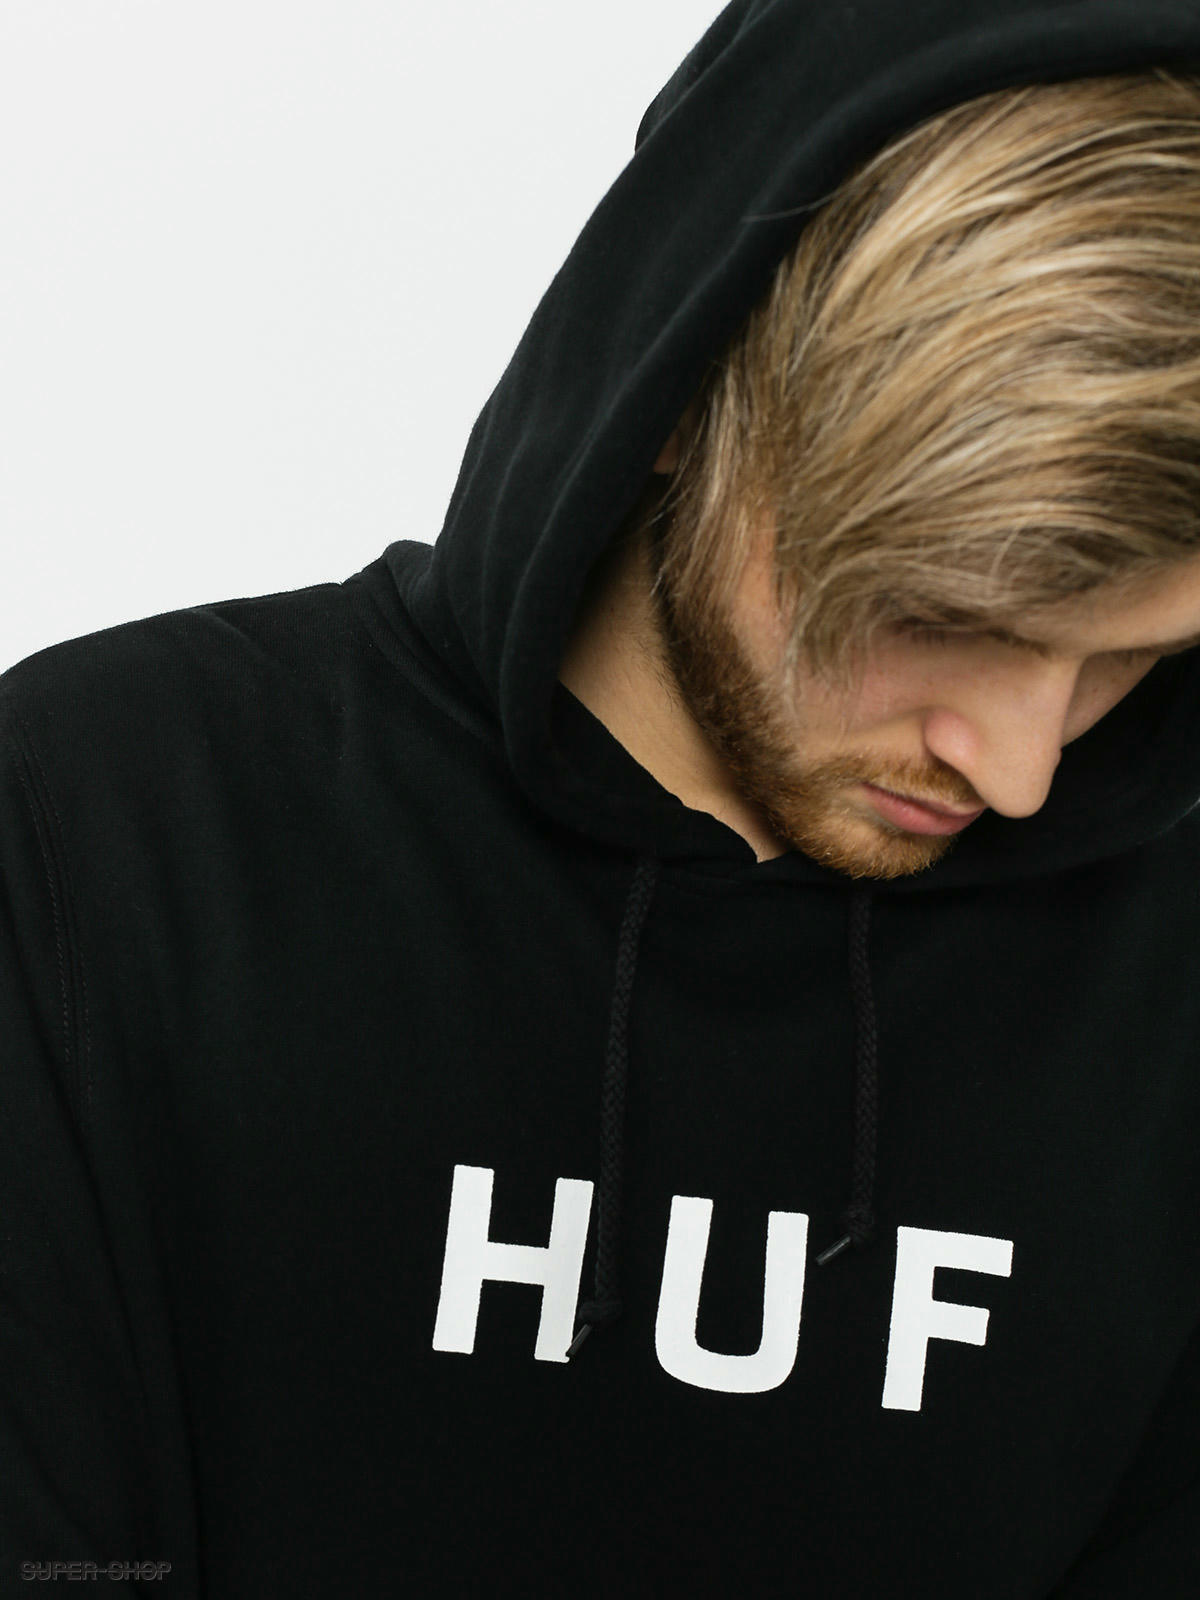 HUF Huf Essentials Og Logo Pullover Hoodie Brown M